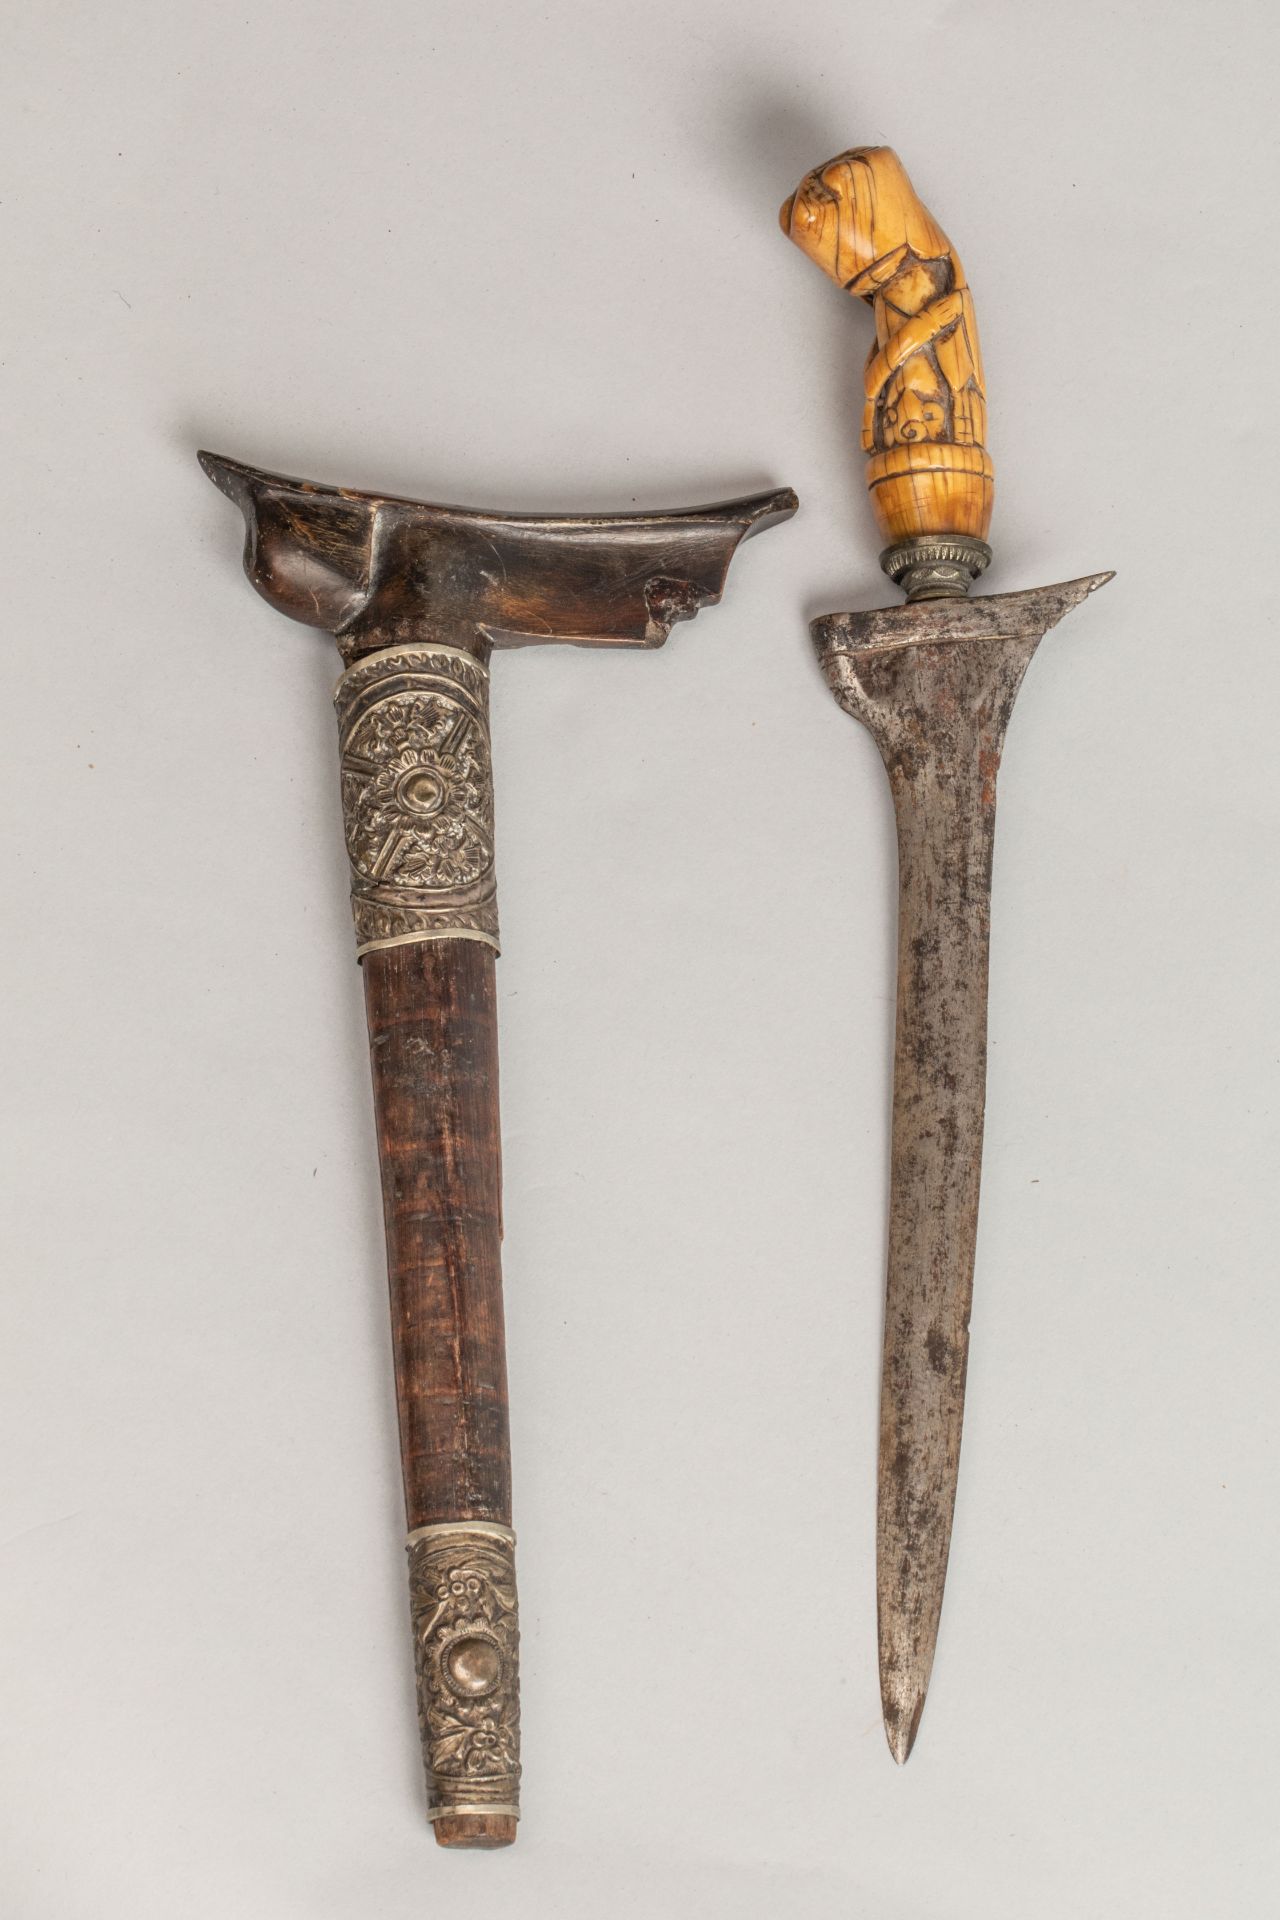 Kriss à lame droite, pommeau zoomorphe d'ivoire et fourreau de bois serti de plaques de métal